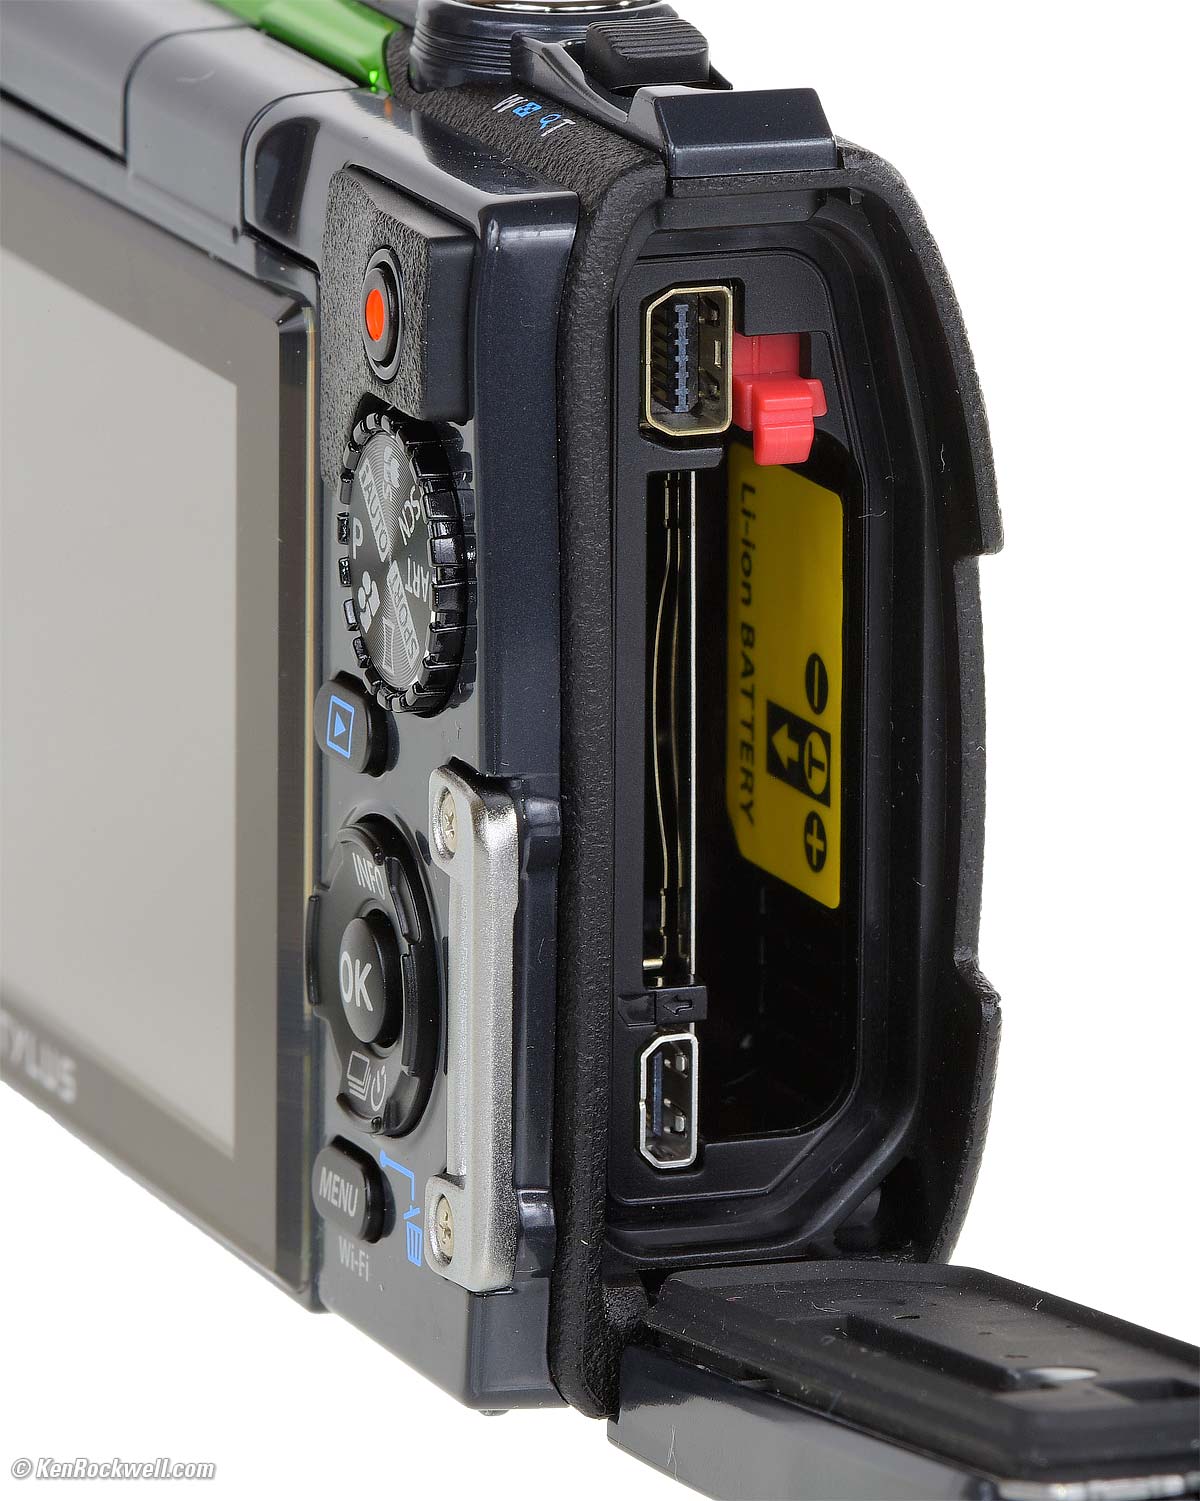 カメラ デジタルカメラ Olympus TG-870 Review